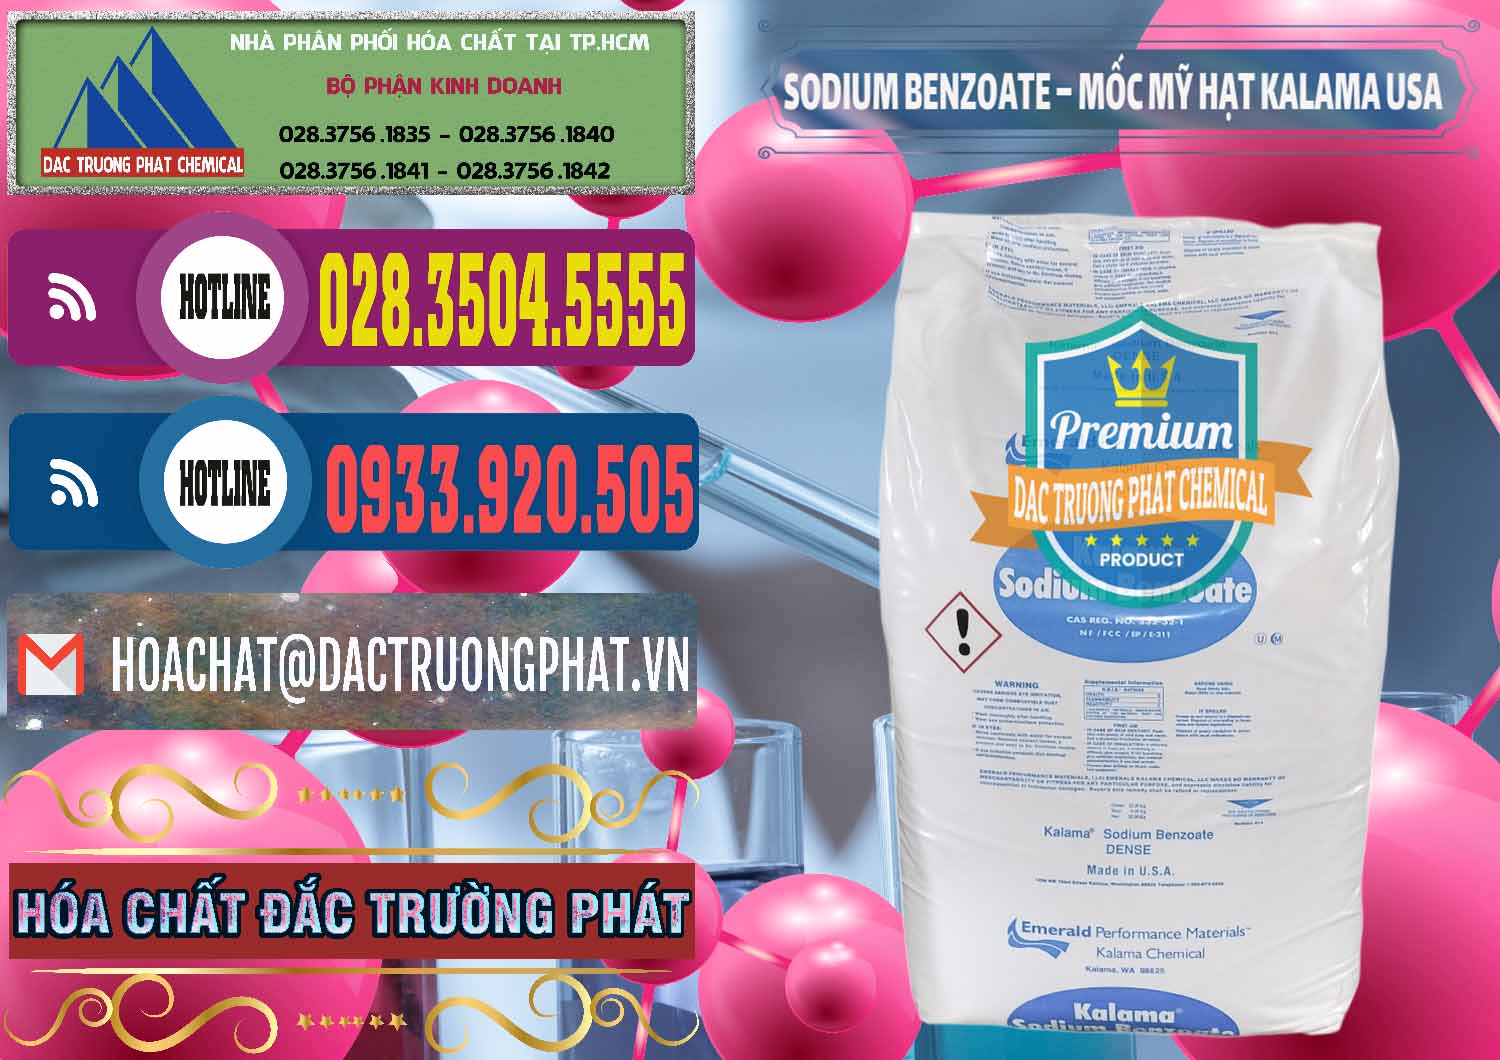 Đơn vị chuyên cung cấp - bán Sodium Benzoate - Mốc Hạt Kalama Food Grade Mỹ Usa - 0137 - Nơi bán & cung cấp hóa chất tại TP.HCM - muabanhoachat.com.vn